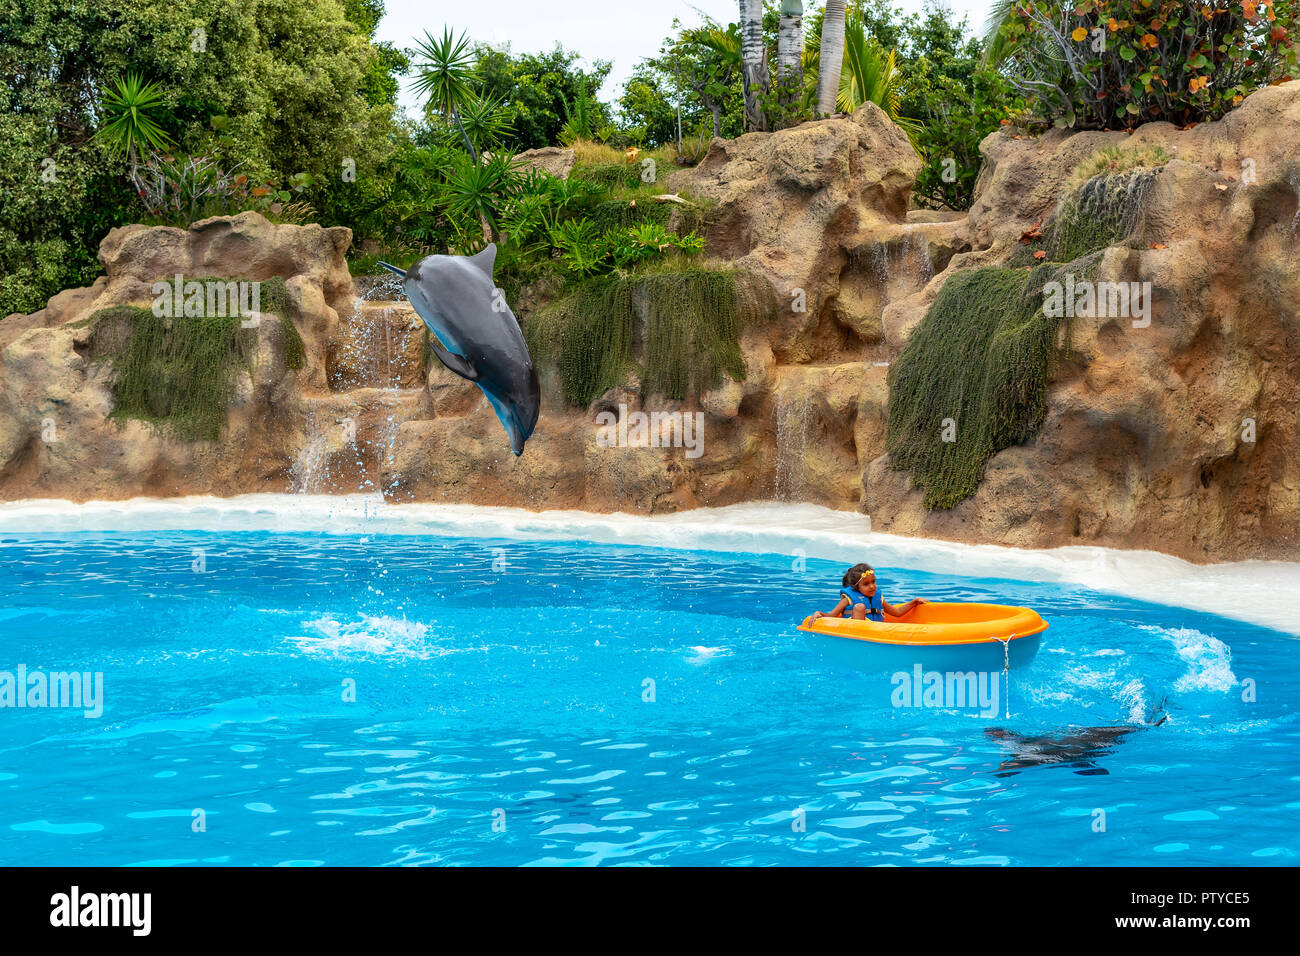 PUERTO DE LA CRUZ, ESPAGNE - 20 juillet 2018 : spectacle de dauphins à Loro Parque. Banque D'Images